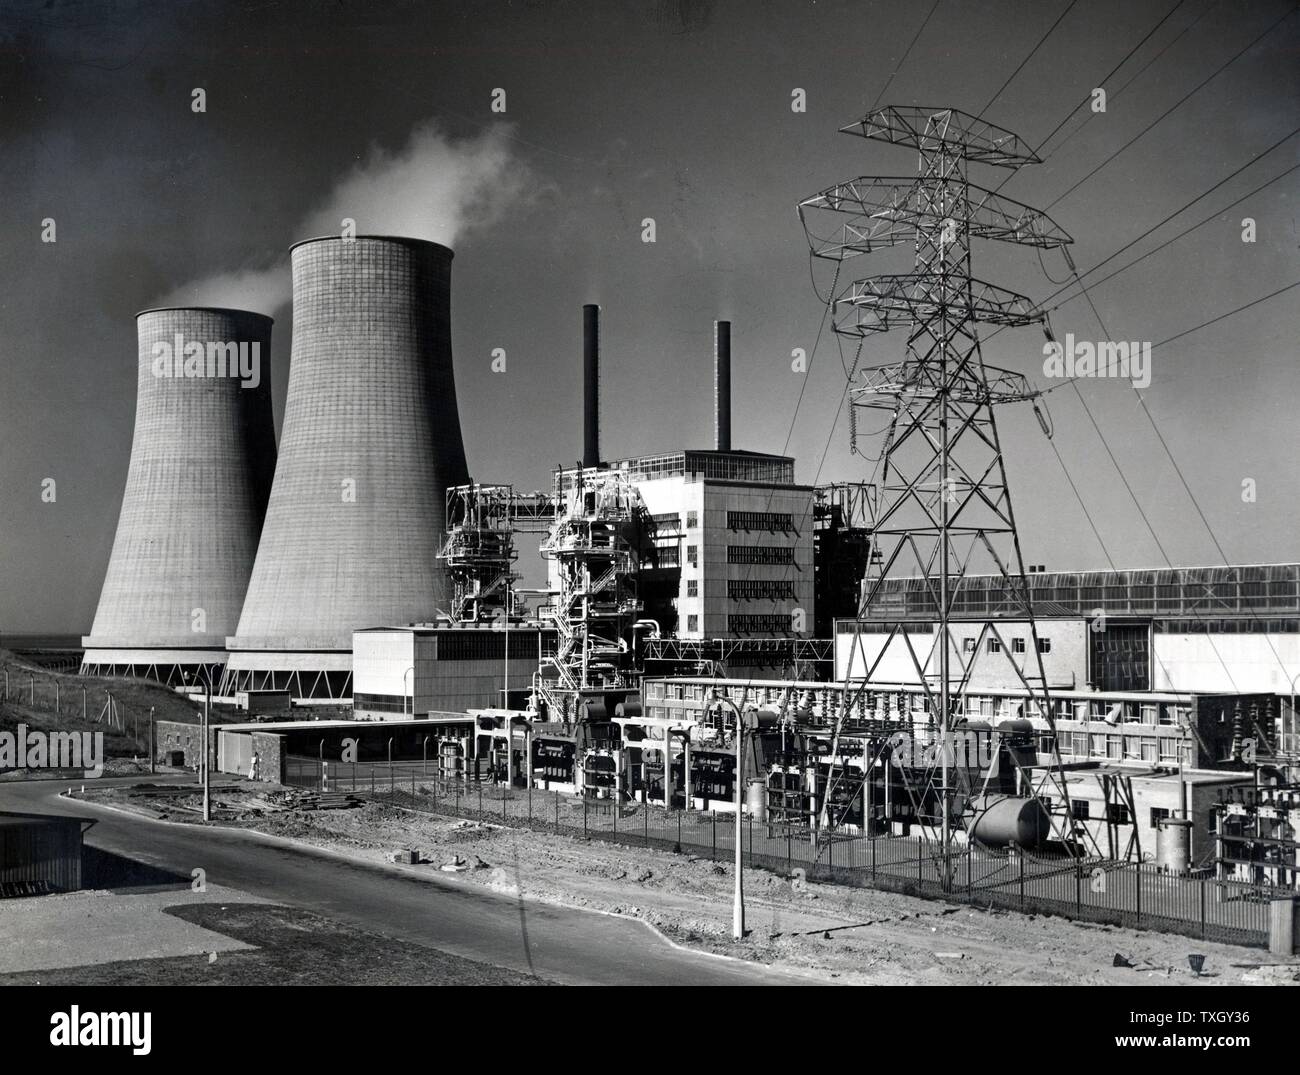 Calder Hall, Cumberland, Inglaterra, la primera Potencia nuclear de escala completa estación inaugurada el 17 de octubre de 1976. A la izquierda se encuentran las torres de refrigeración y a la derecha de pylon llevando la distribución de las líneas de transmisión de electricidad en el Sistema Interconectado Nacional. Fotografía de la Autoridad de Energía Atómica del Reino Unido Foto de stock